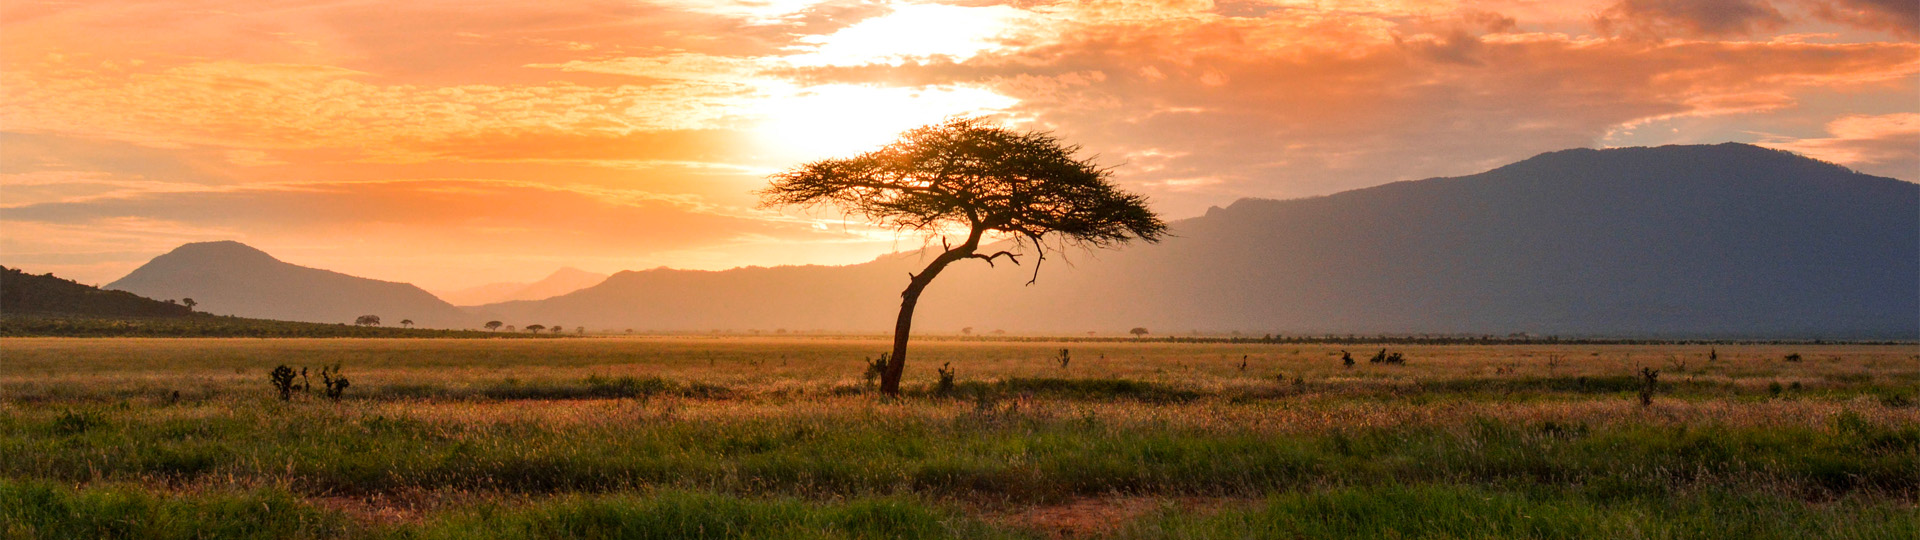 Baum bei Sonnenuntergang in der Savanne